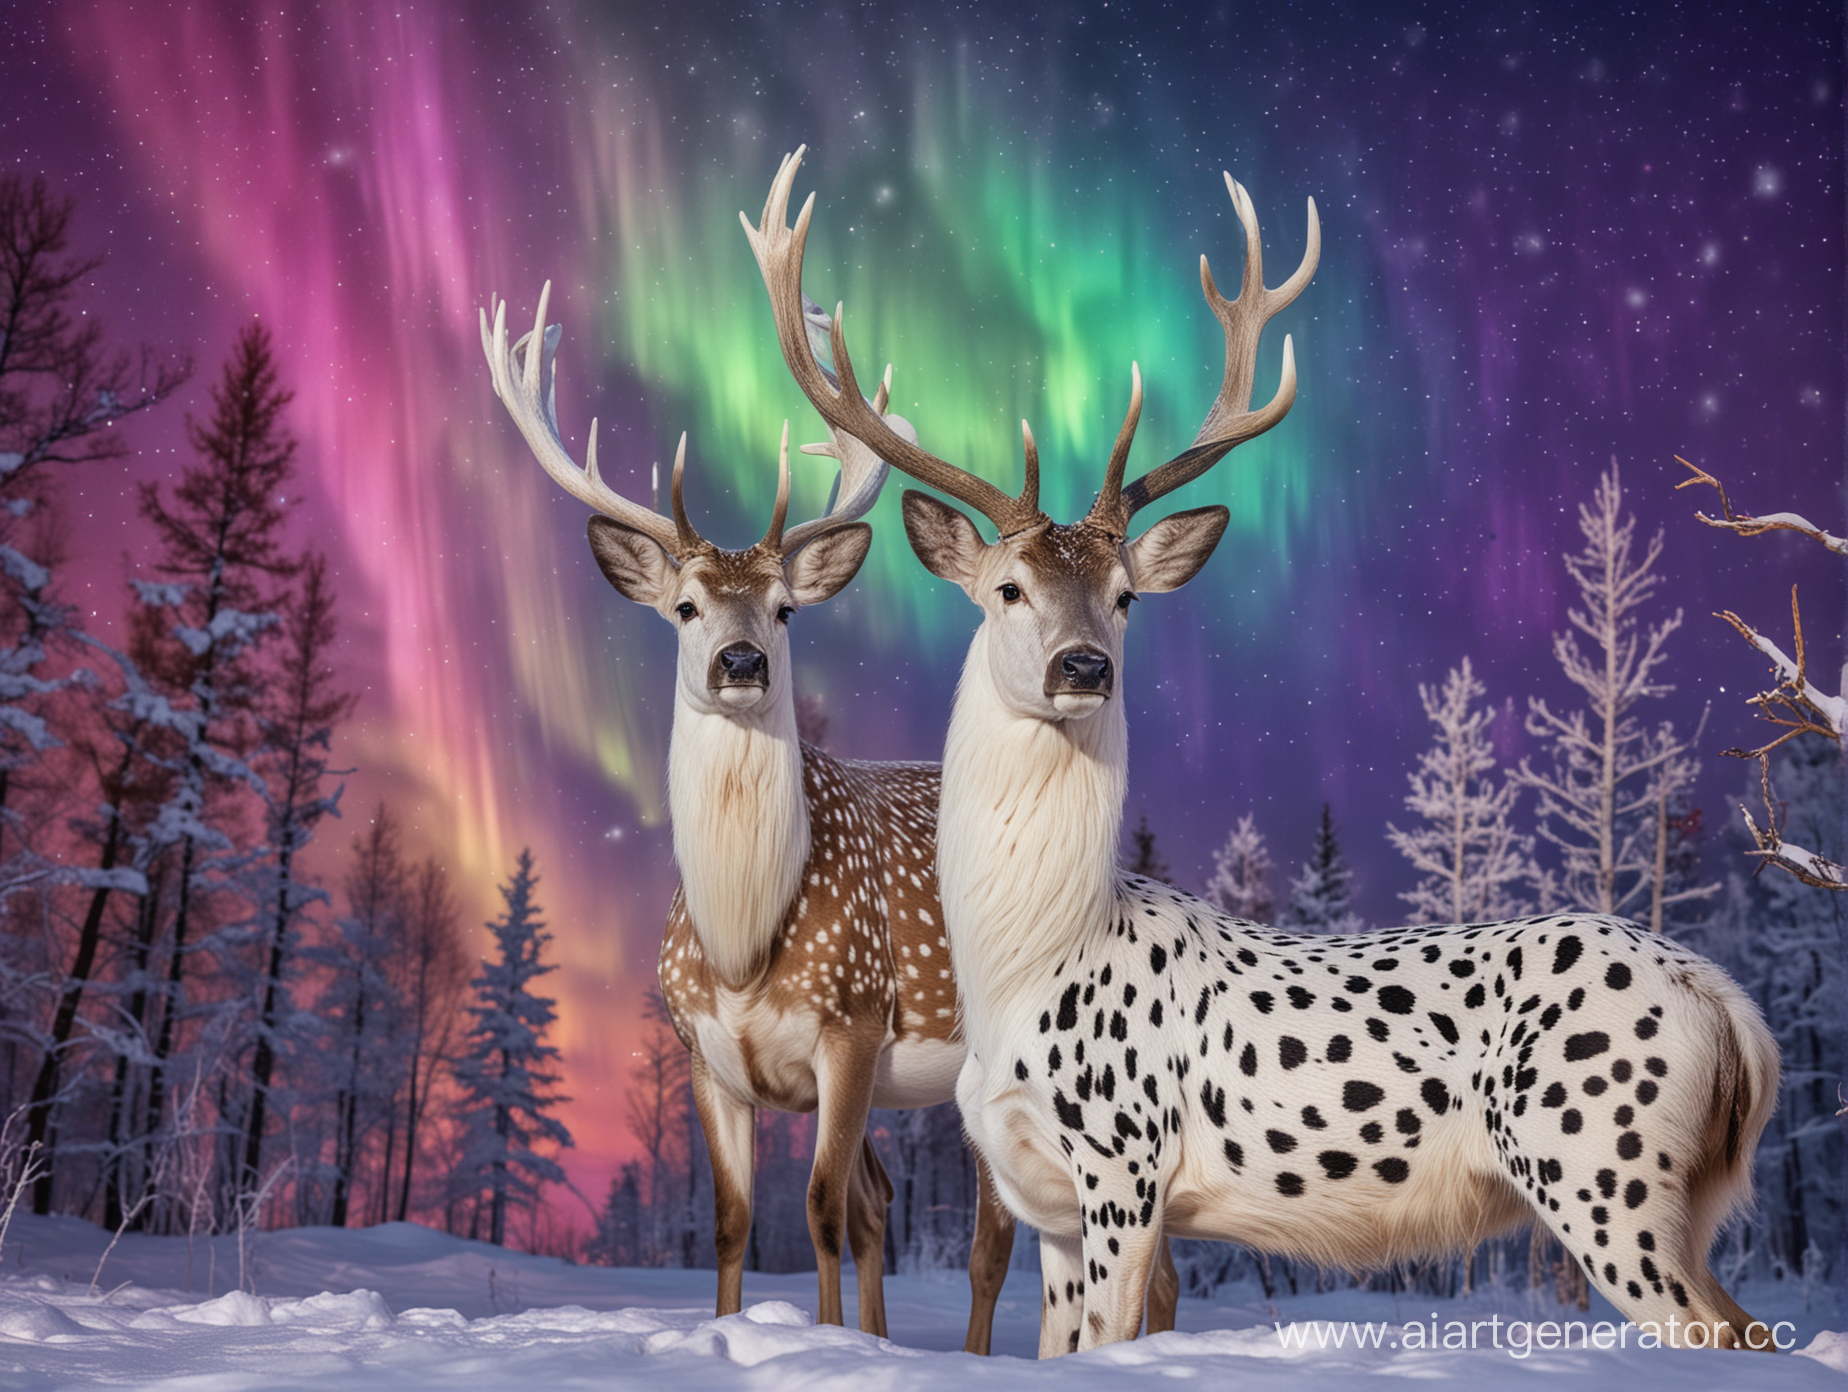 Северный олень с рогами породы далматинец зимой ночью на фоне разноцветного радужного северного сияния